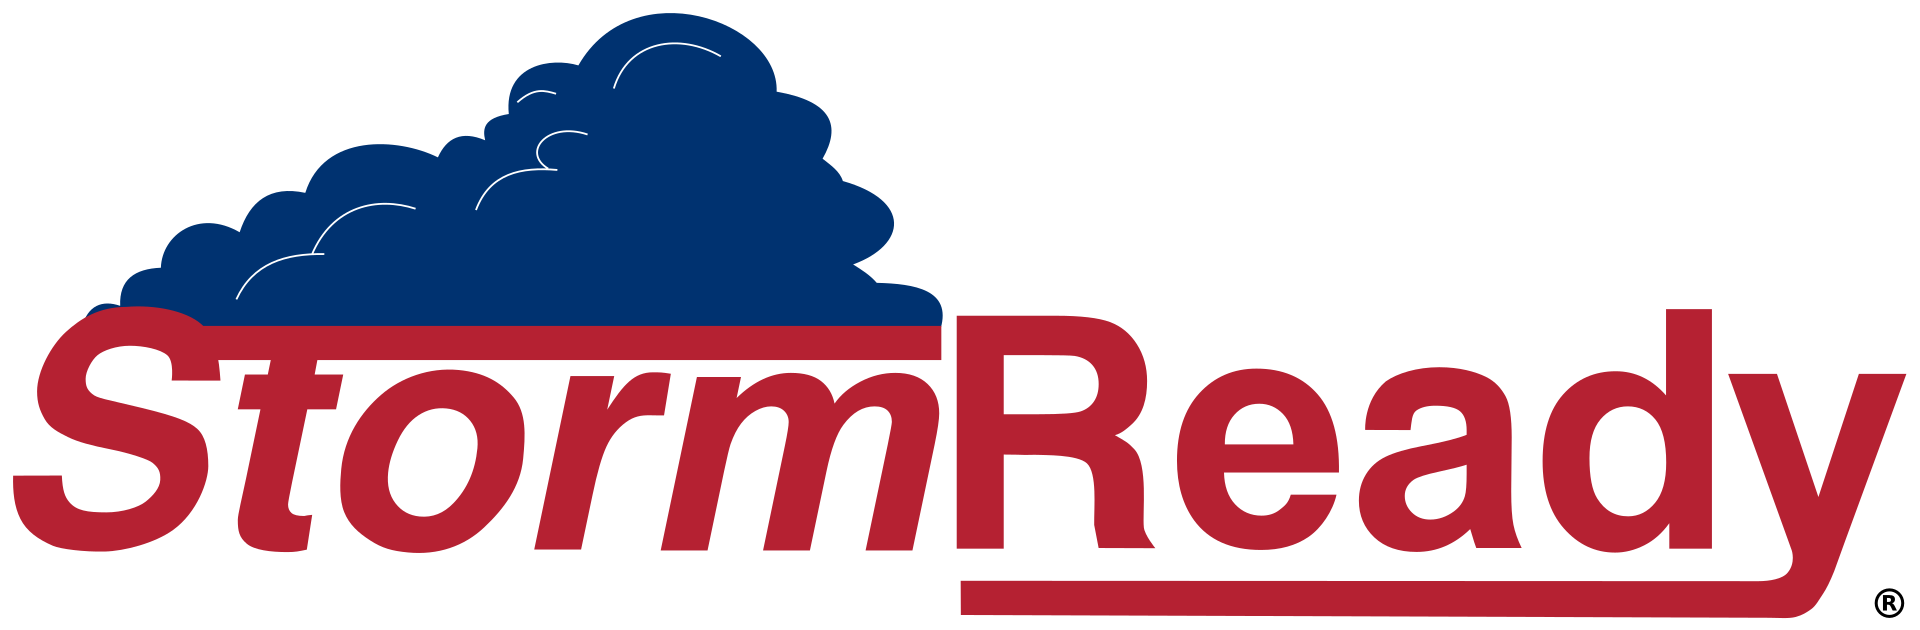 StormReady Logo - HiRes